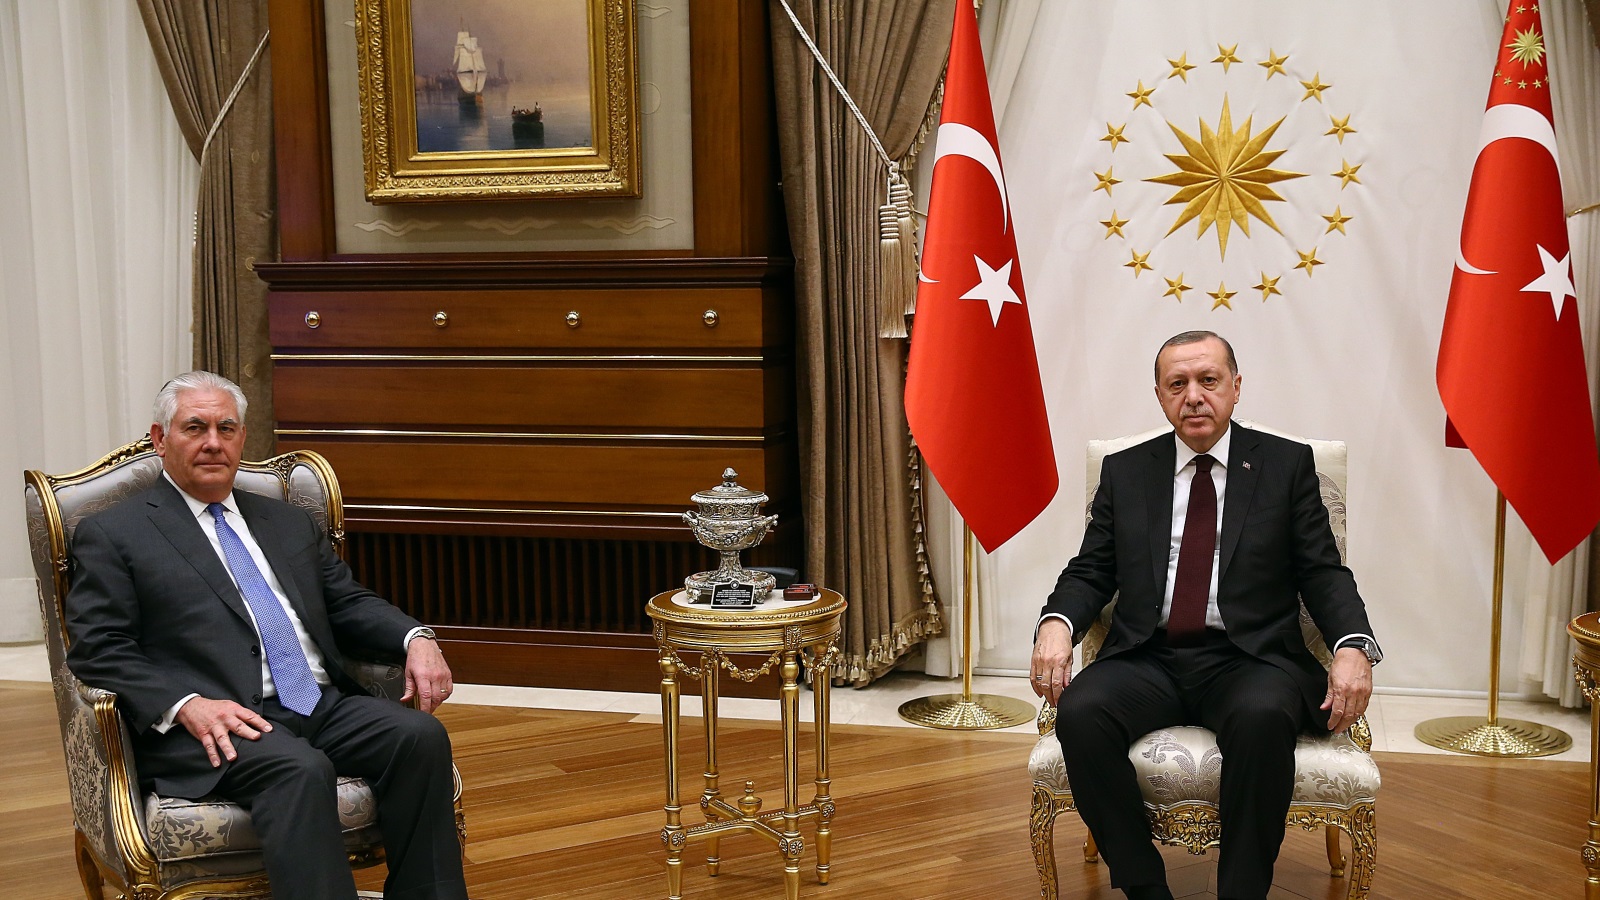 أردوغان (يمين) أثناء استقباله وزير الخارجية الأميركي في أنقرة (الأوروبية)